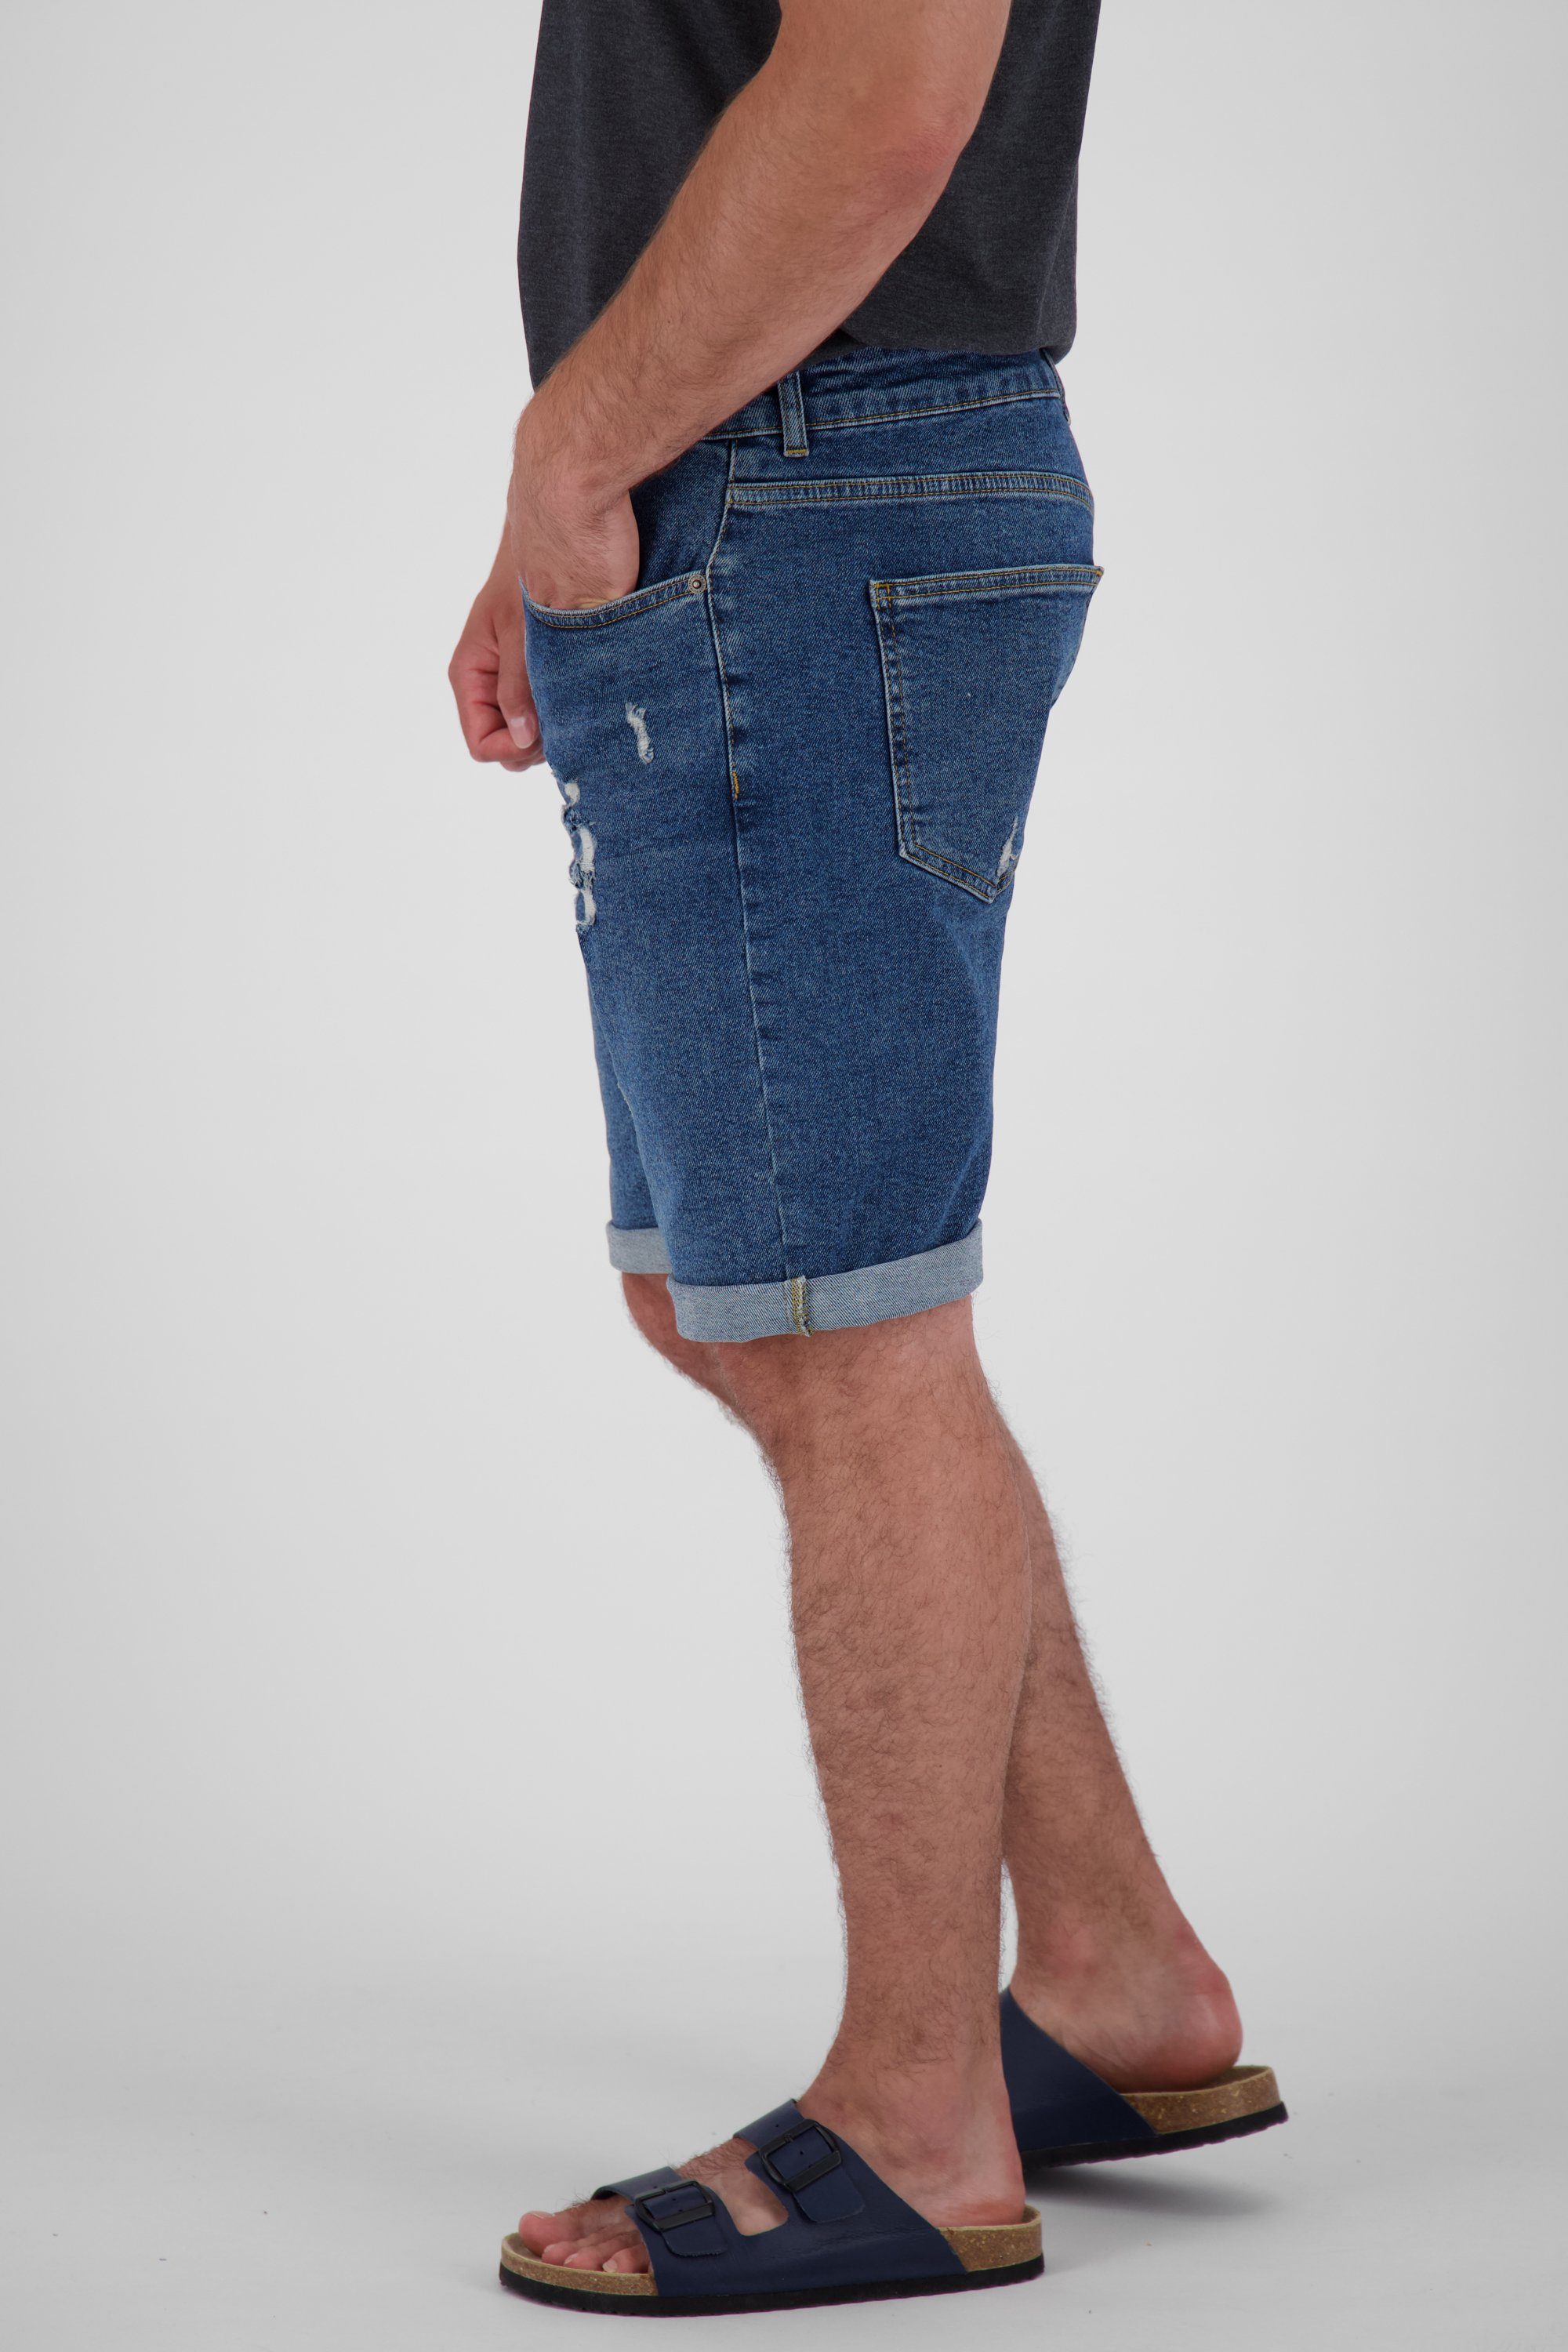 DNM Alife Shorts denim kurze Jeansshorts, Herren MorganAK A Hose dark Kickin & washed Shorts